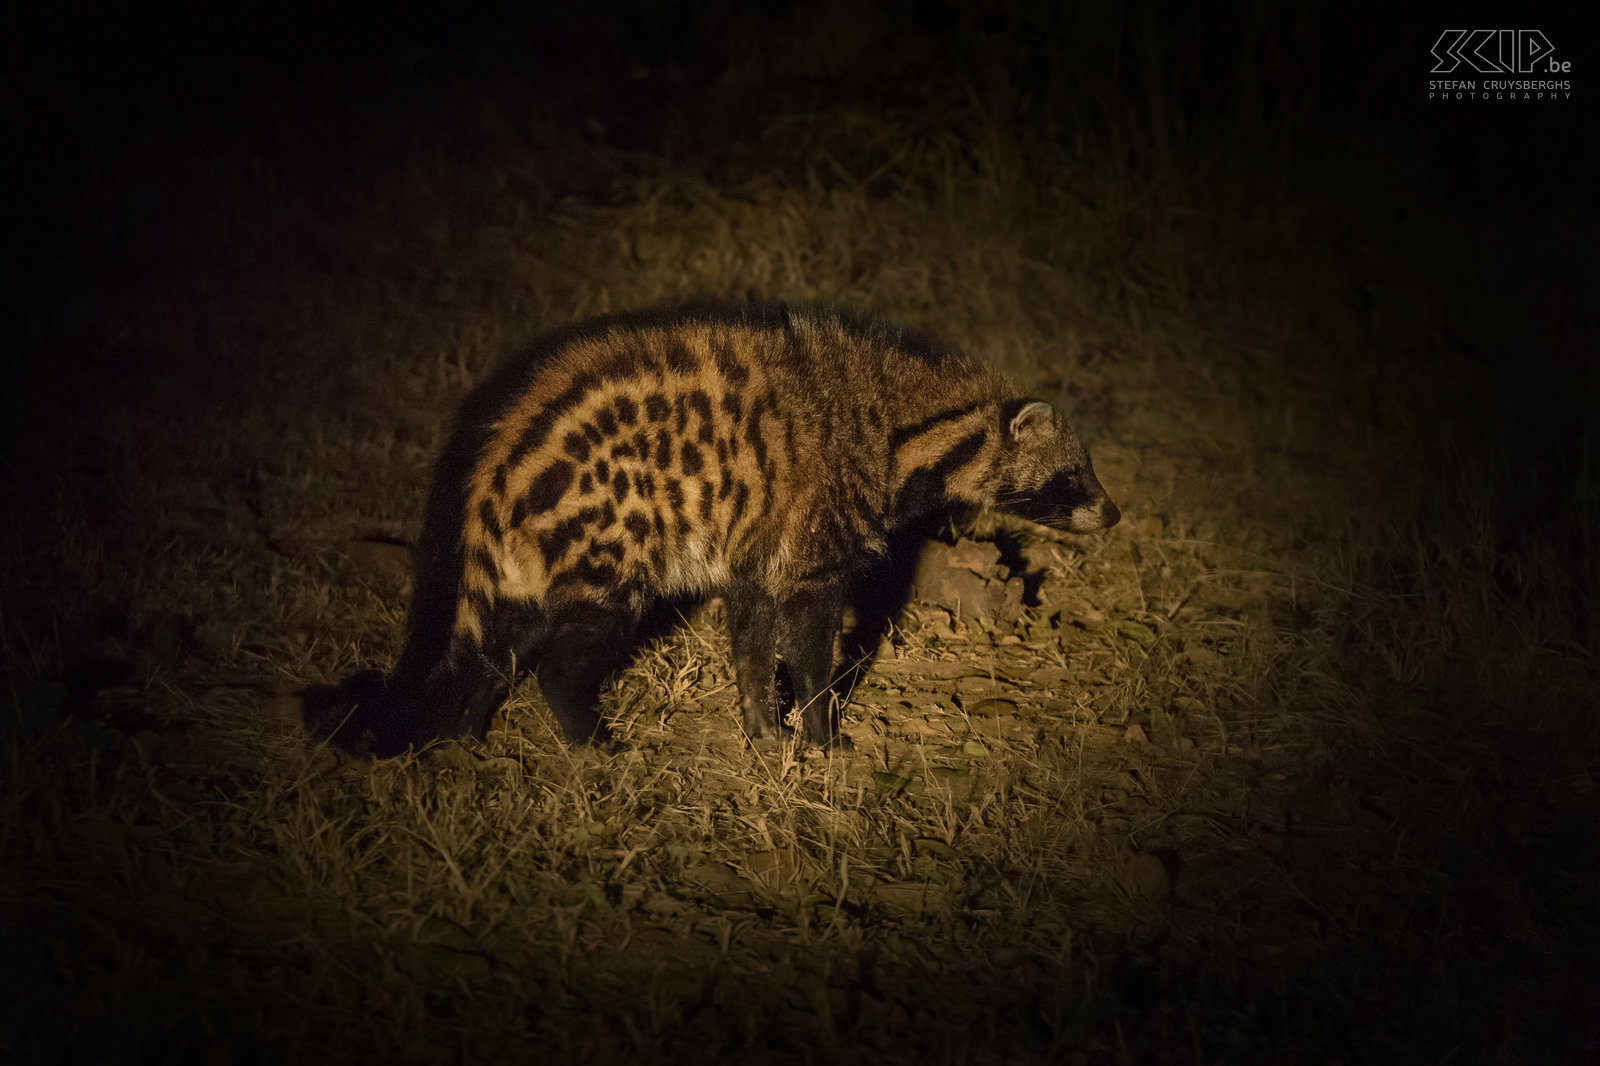 South Luangwa - Civet Tijdens de nacht safari kwamen we ook een Afrikaanse civet (Civettictis civetta) tegen. De civet leeft solitair en voornamelijk 's nachts. Het is een omnivoor die kleine gewervelde dieren, ongewervelden, eieren en ook enkele planten en vruchten eet. Stefan Cruysberghs